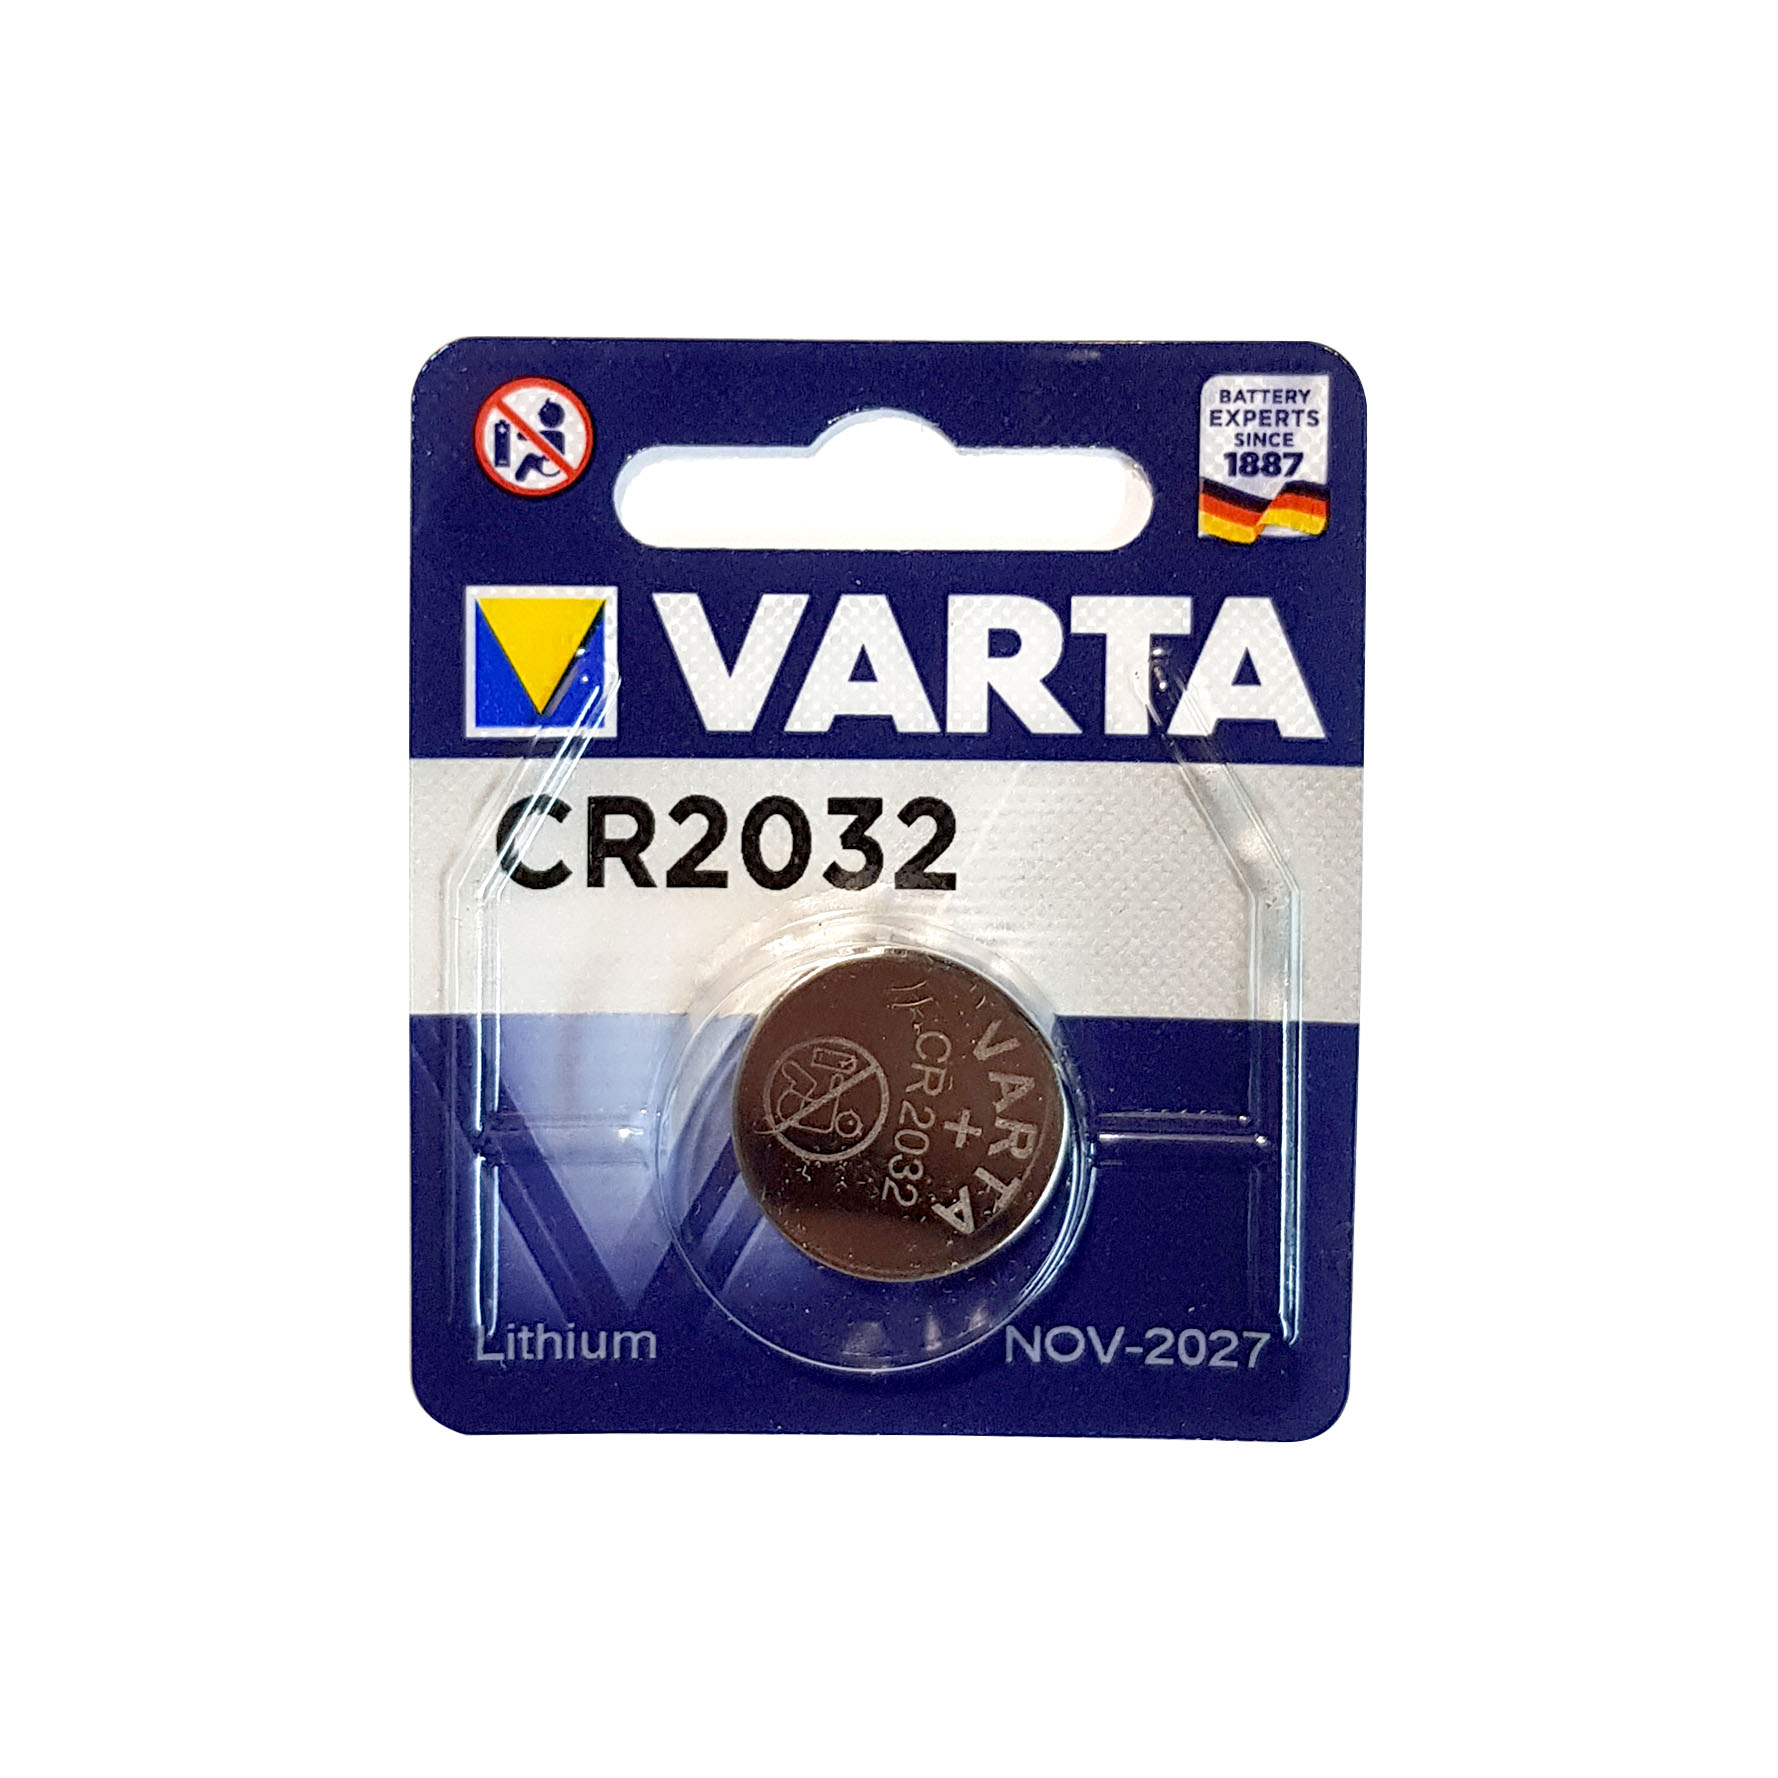 باتری سکه ای وارتا مدل CR2032